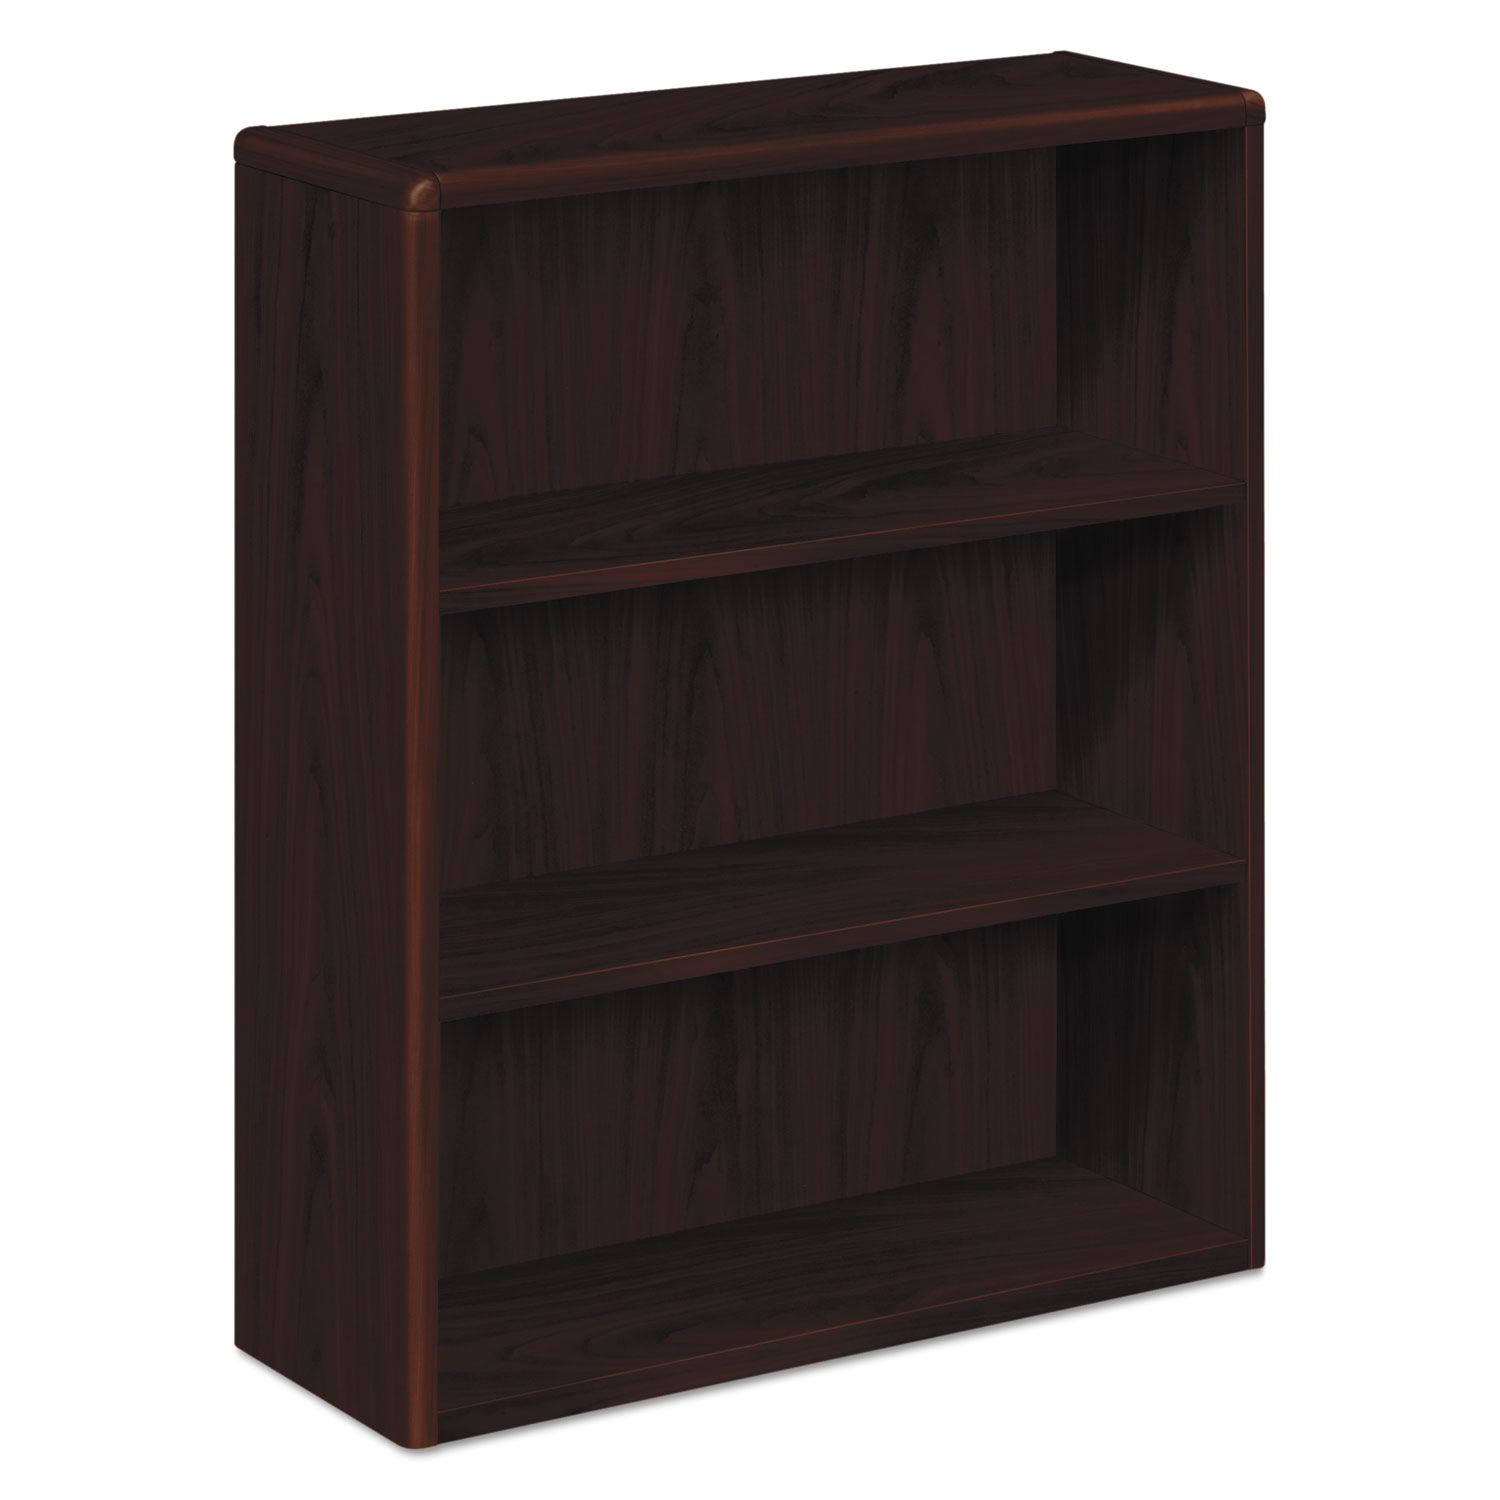 10700 Series Wood Bookcase, Three Shelf, 36w x 13 1/8d x 43 3/8h, Mahogany